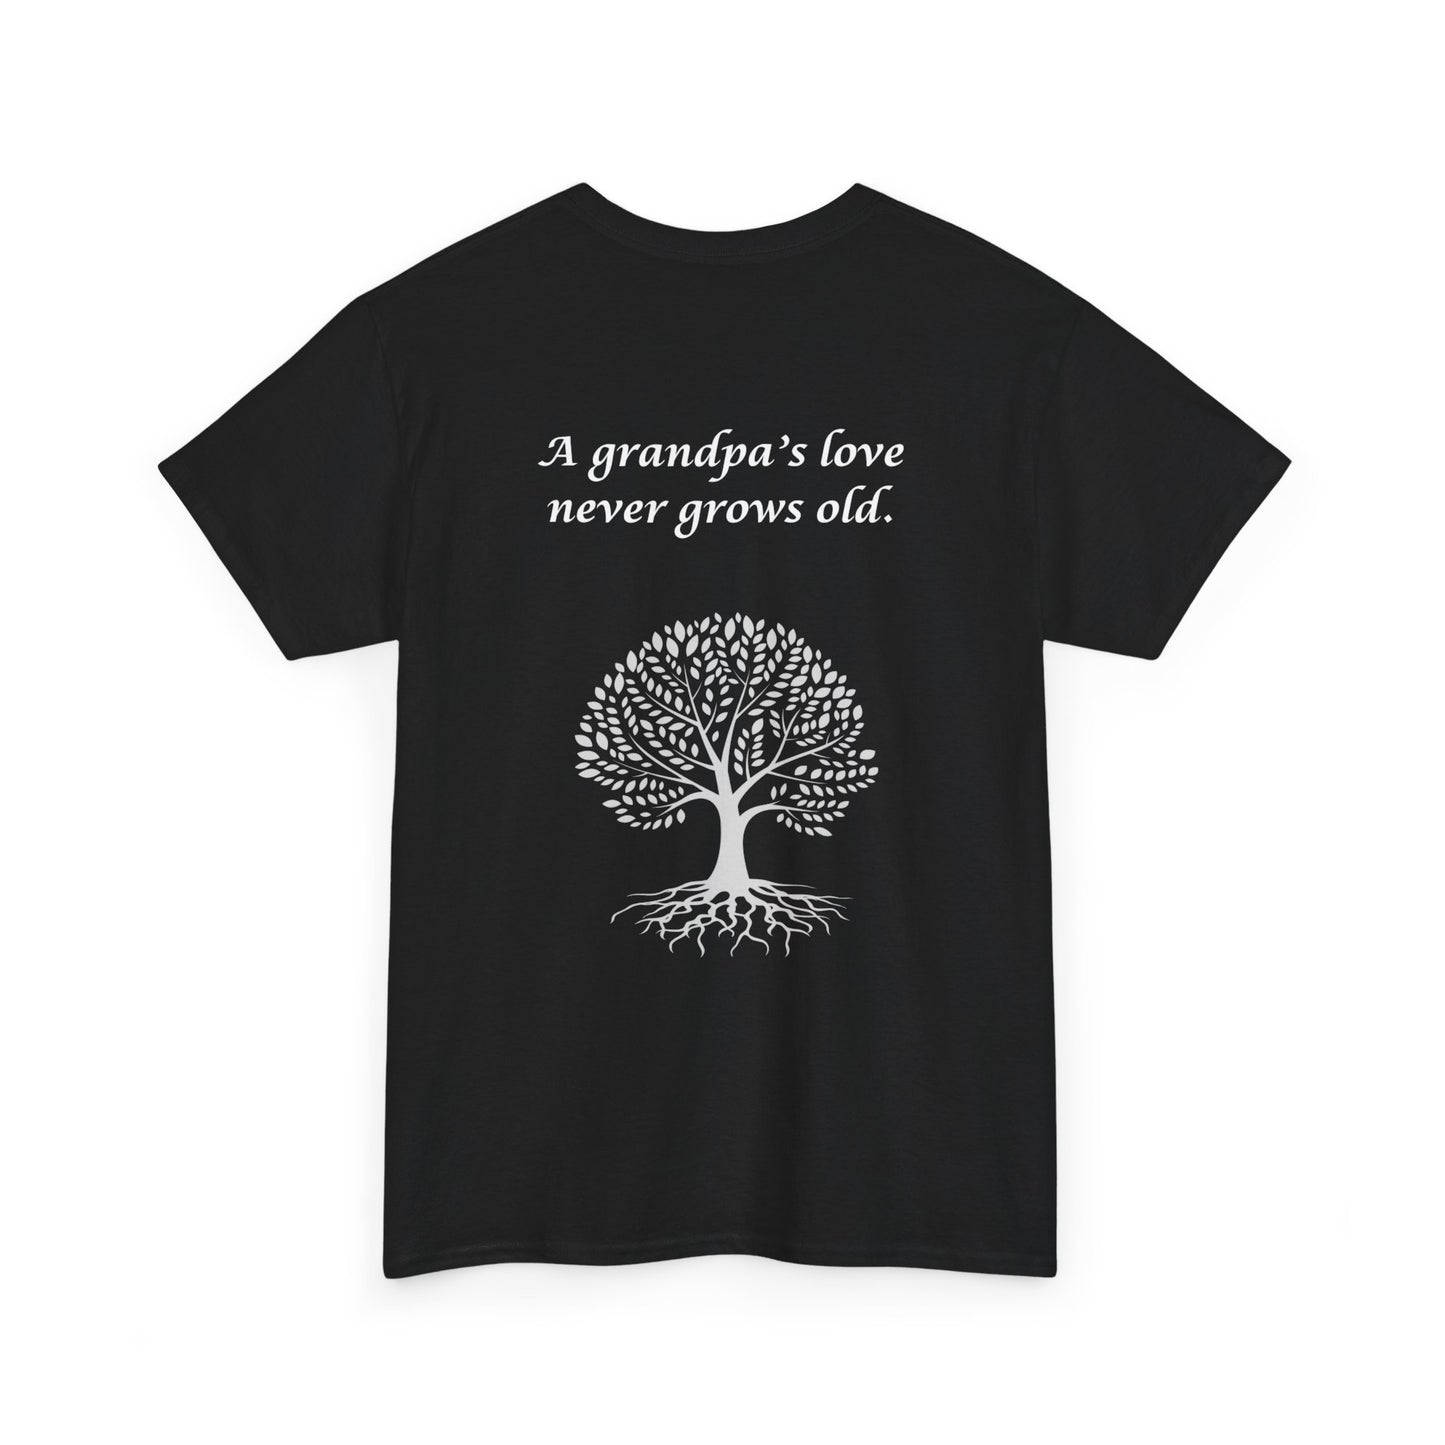 Feiern Sie den Vatertag mit einem personalisierten Shirt für den besten Papa! Dieses personalisierte Geschenk ist perfekt für Opas und zeigt, dass er zum Opa befördert wurde. 